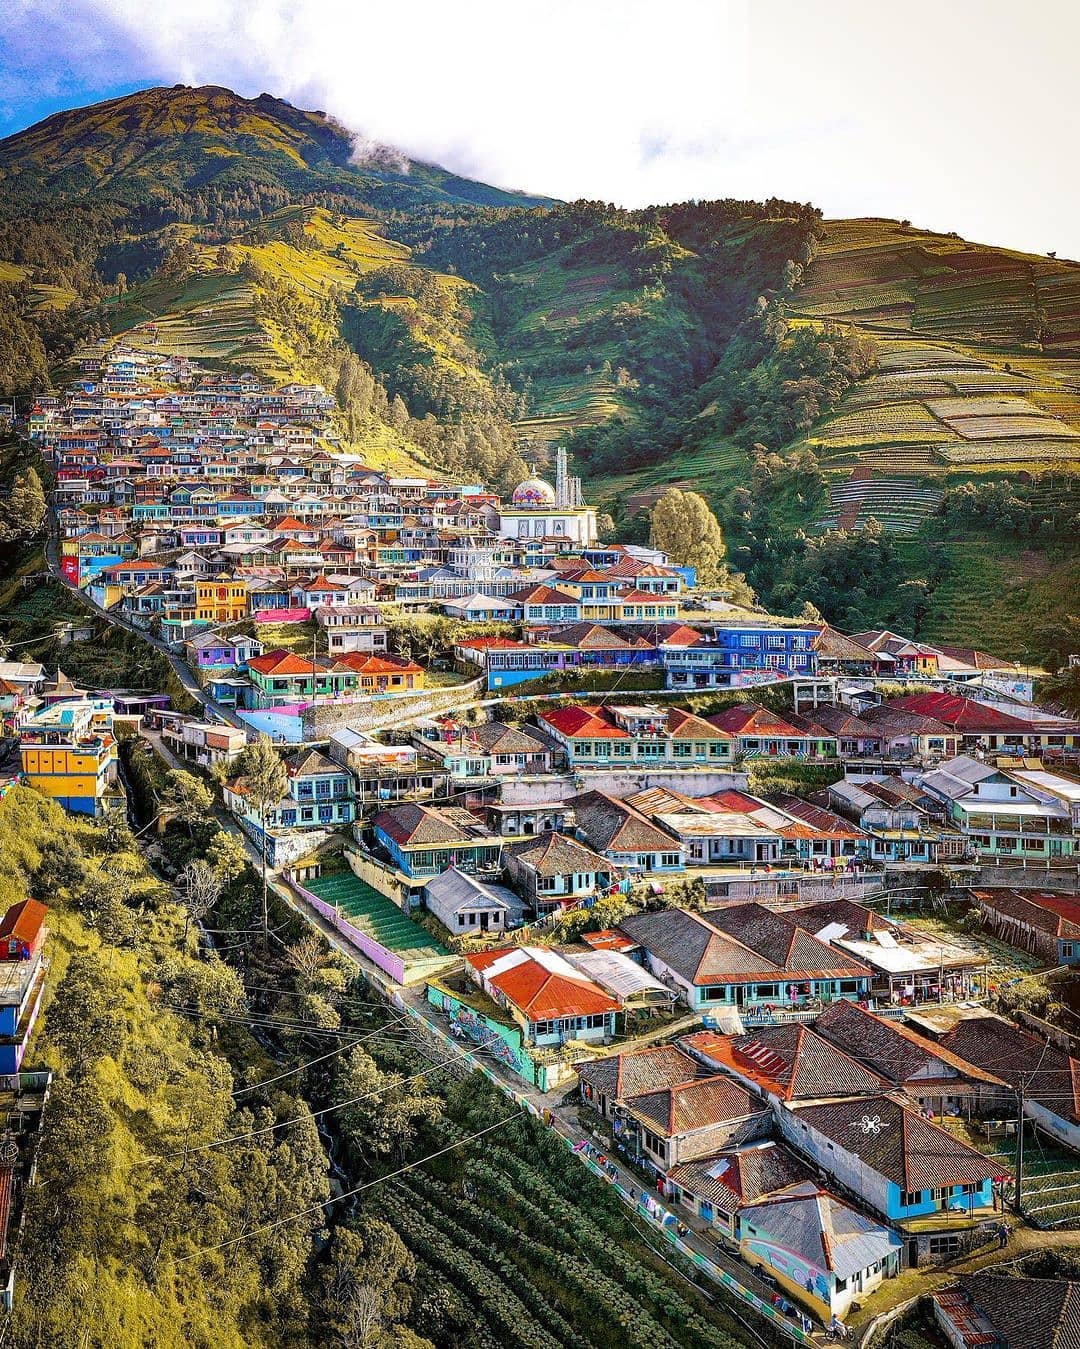 Nepal van Java di pagi hari (Sumber Foto: Instagram/@nepal_van_java)